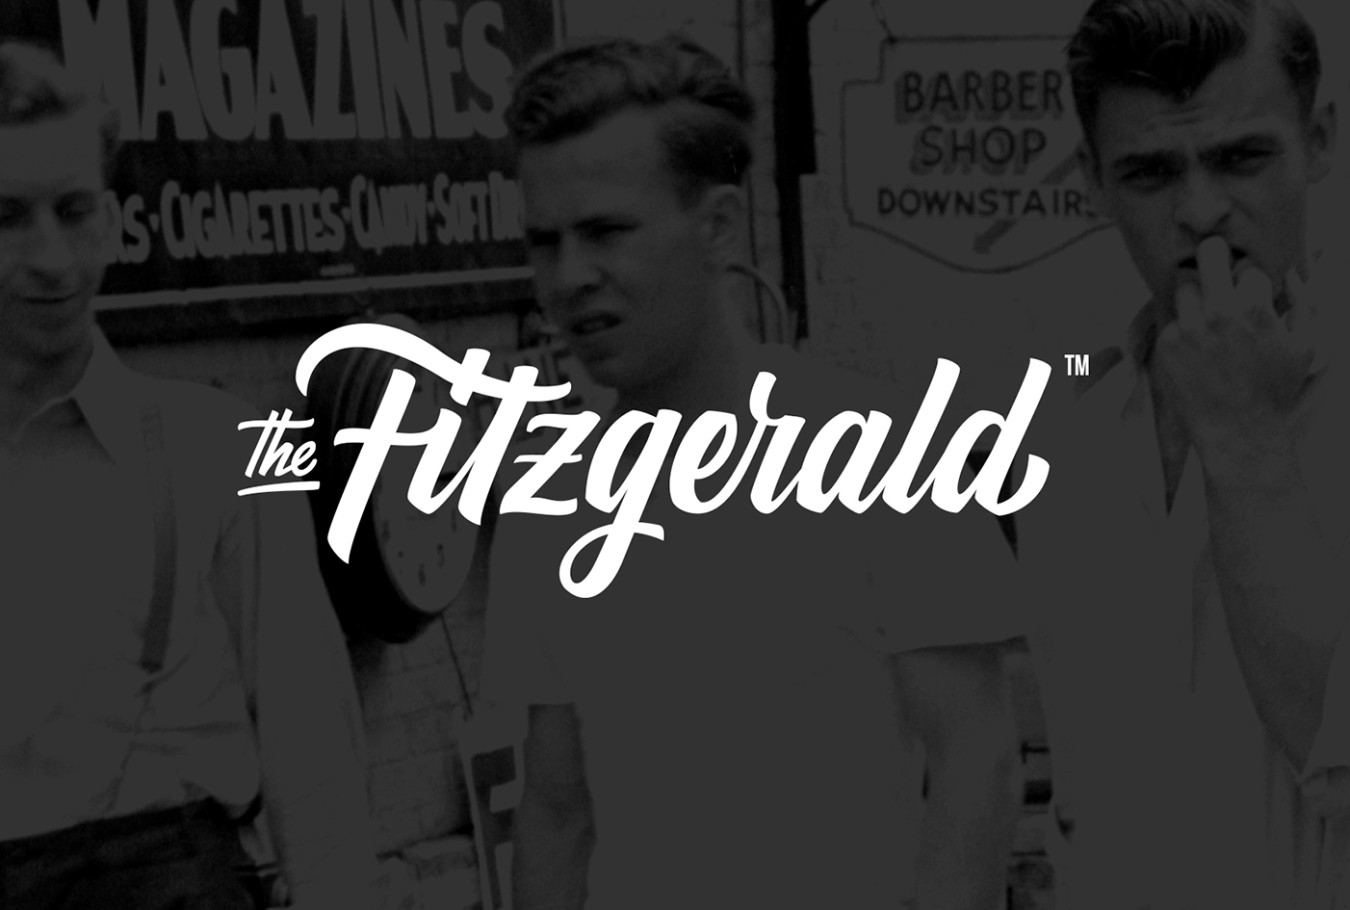 Diseño de identidad corporativa restaurante The Fitzgerald - Diseño de packaging restaurante The Fitz - Diseño de logo The Fitzgerald - Estudio de diseño en Valencia Pixelarte